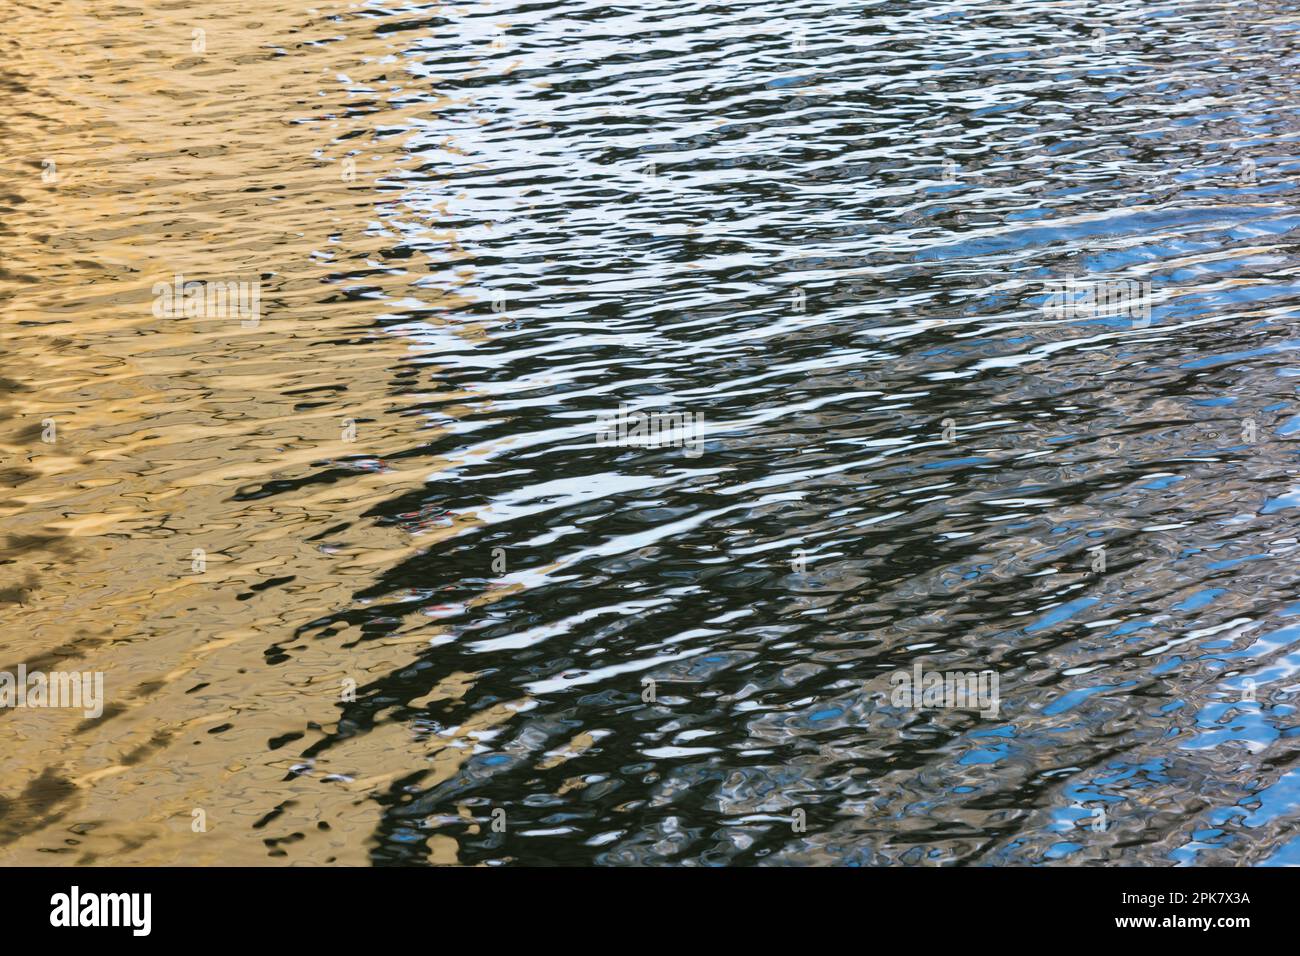 Dettagli della superficie dell'acqua fluviale, riflessi e abstract, increspature e motivi. Foto Stock